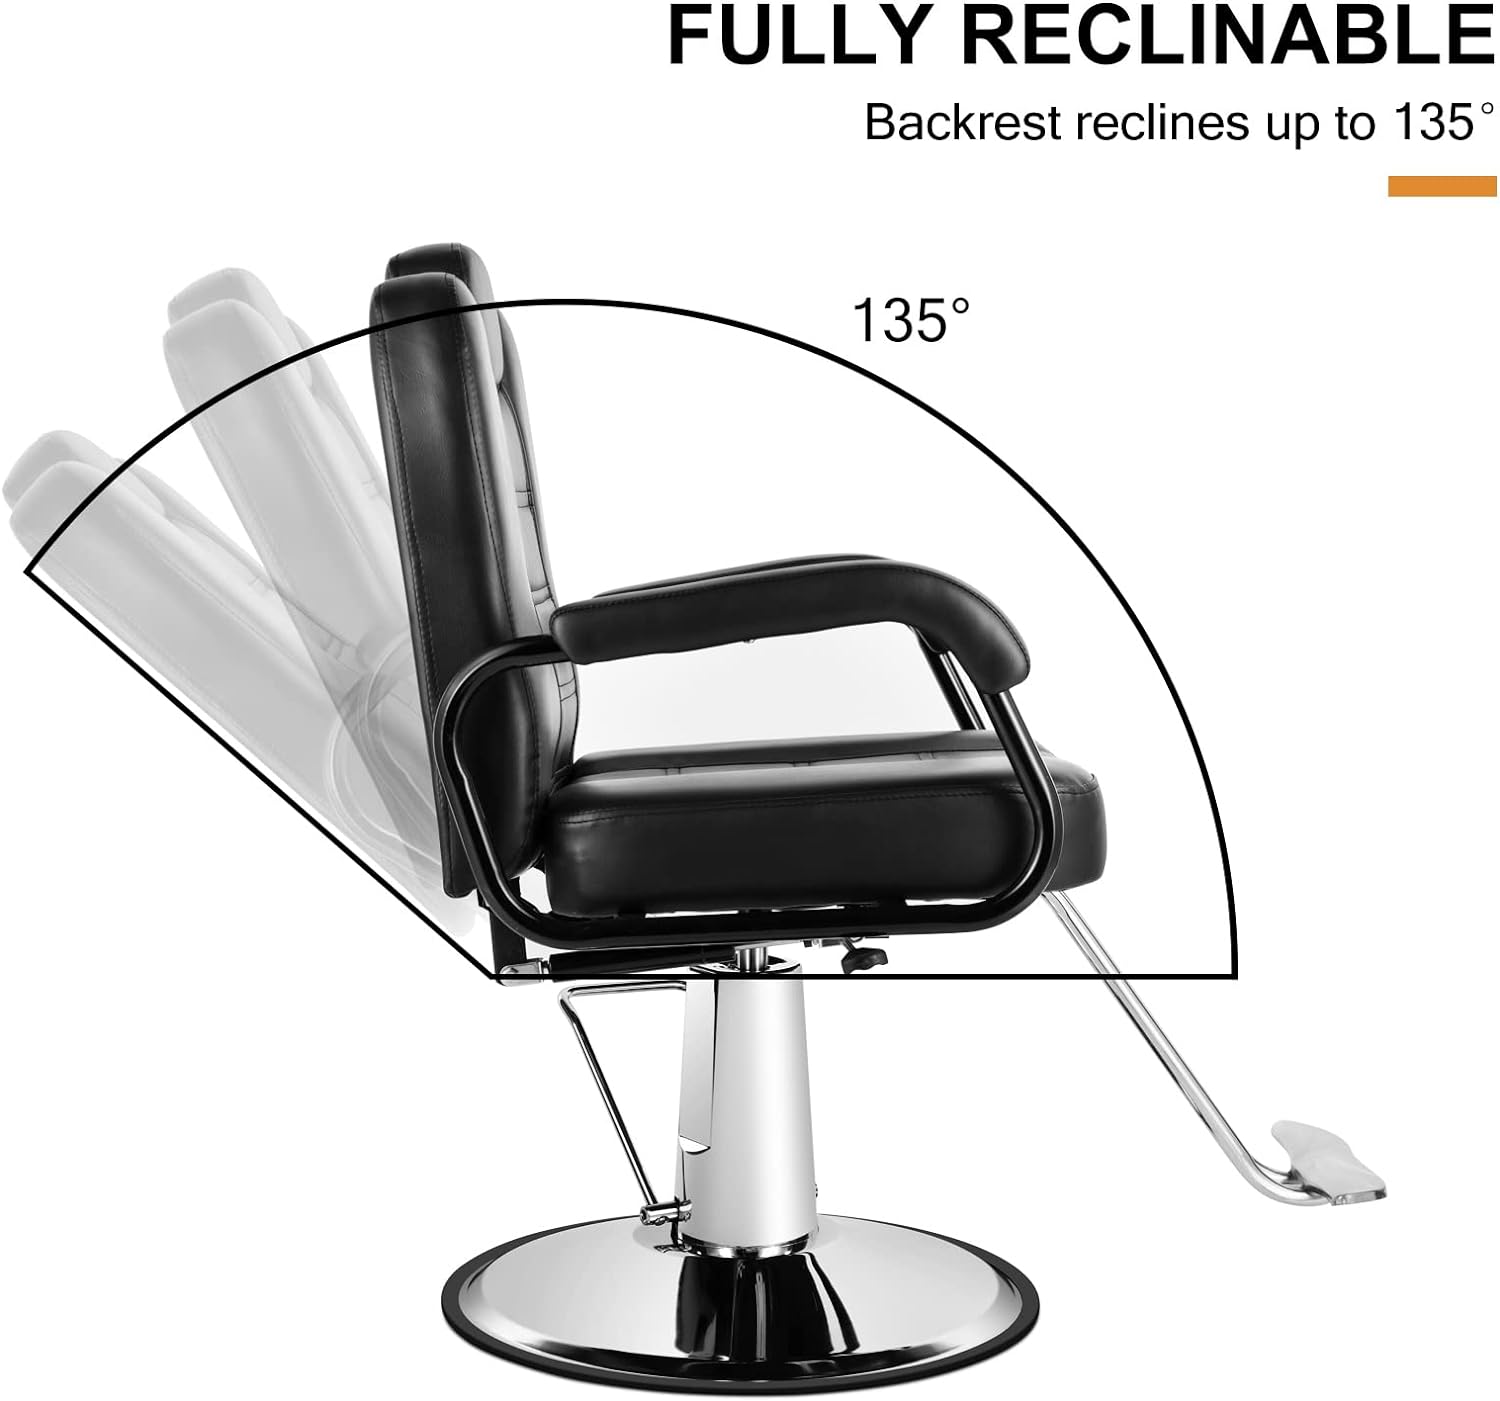 Sillas de barberos, silla reclinable hidráulica de alta resistencia, m -  VIRTUAL MUEBLES